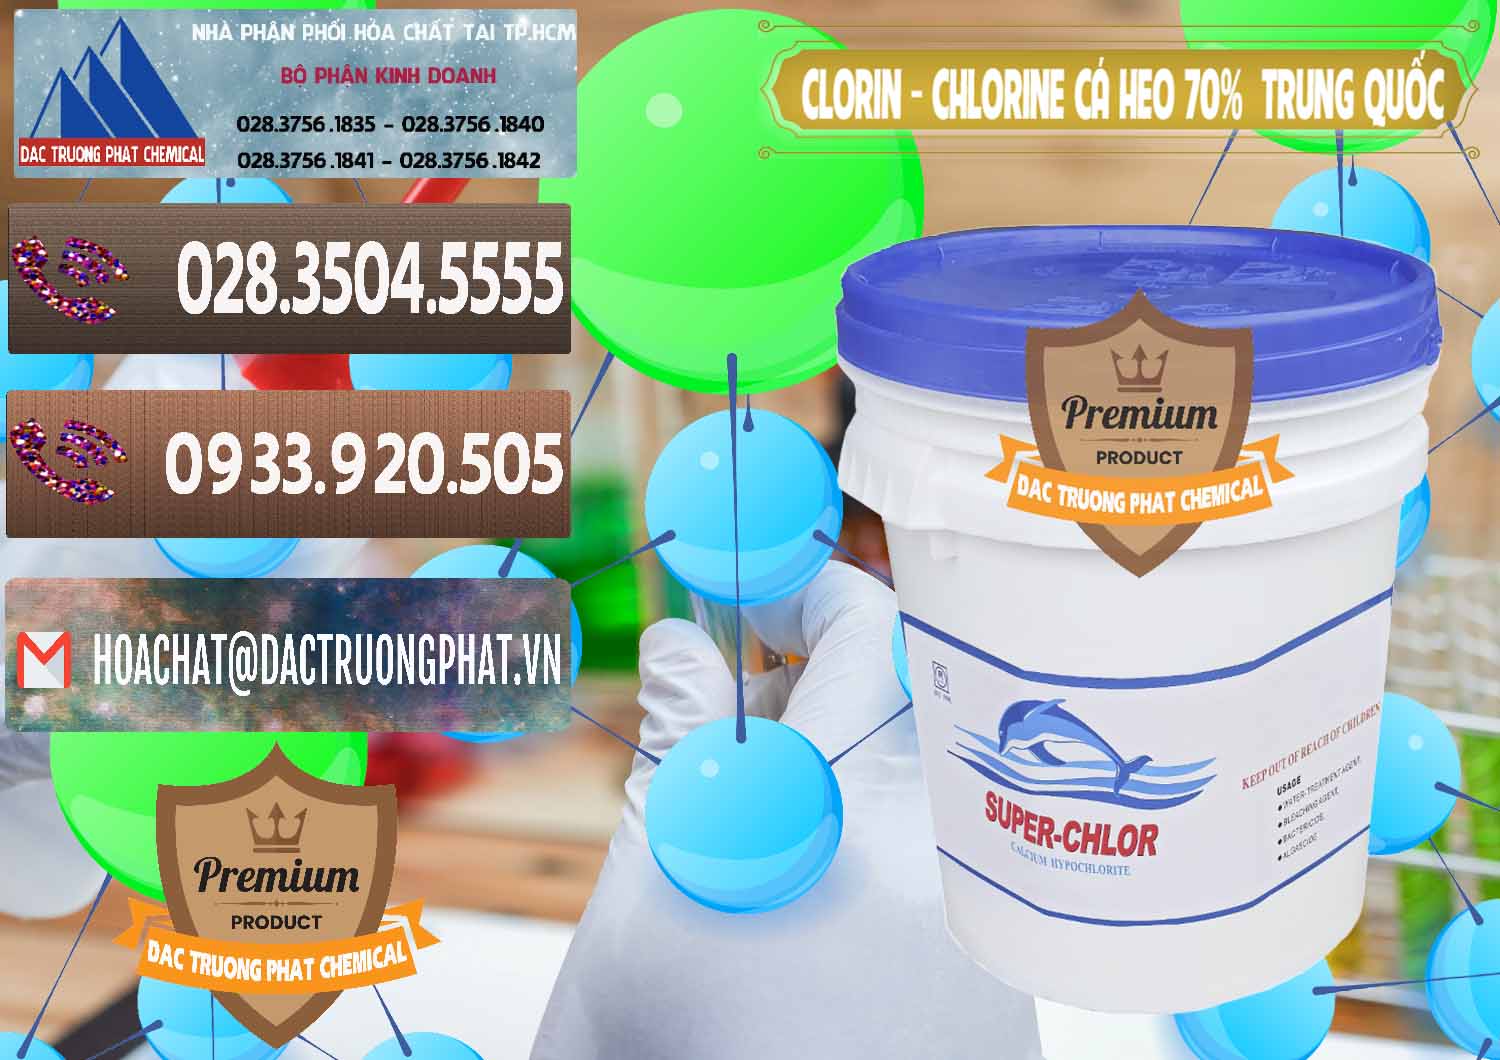 Công ty bán _ phân phối Clorin - Chlorine Cá Heo 70% Super Chlor Nắp Xanh Trung Quốc China - 0209 - Đơn vị cung ứng - phân phối hóa chất tại TP.HCM - hoachatviet.net